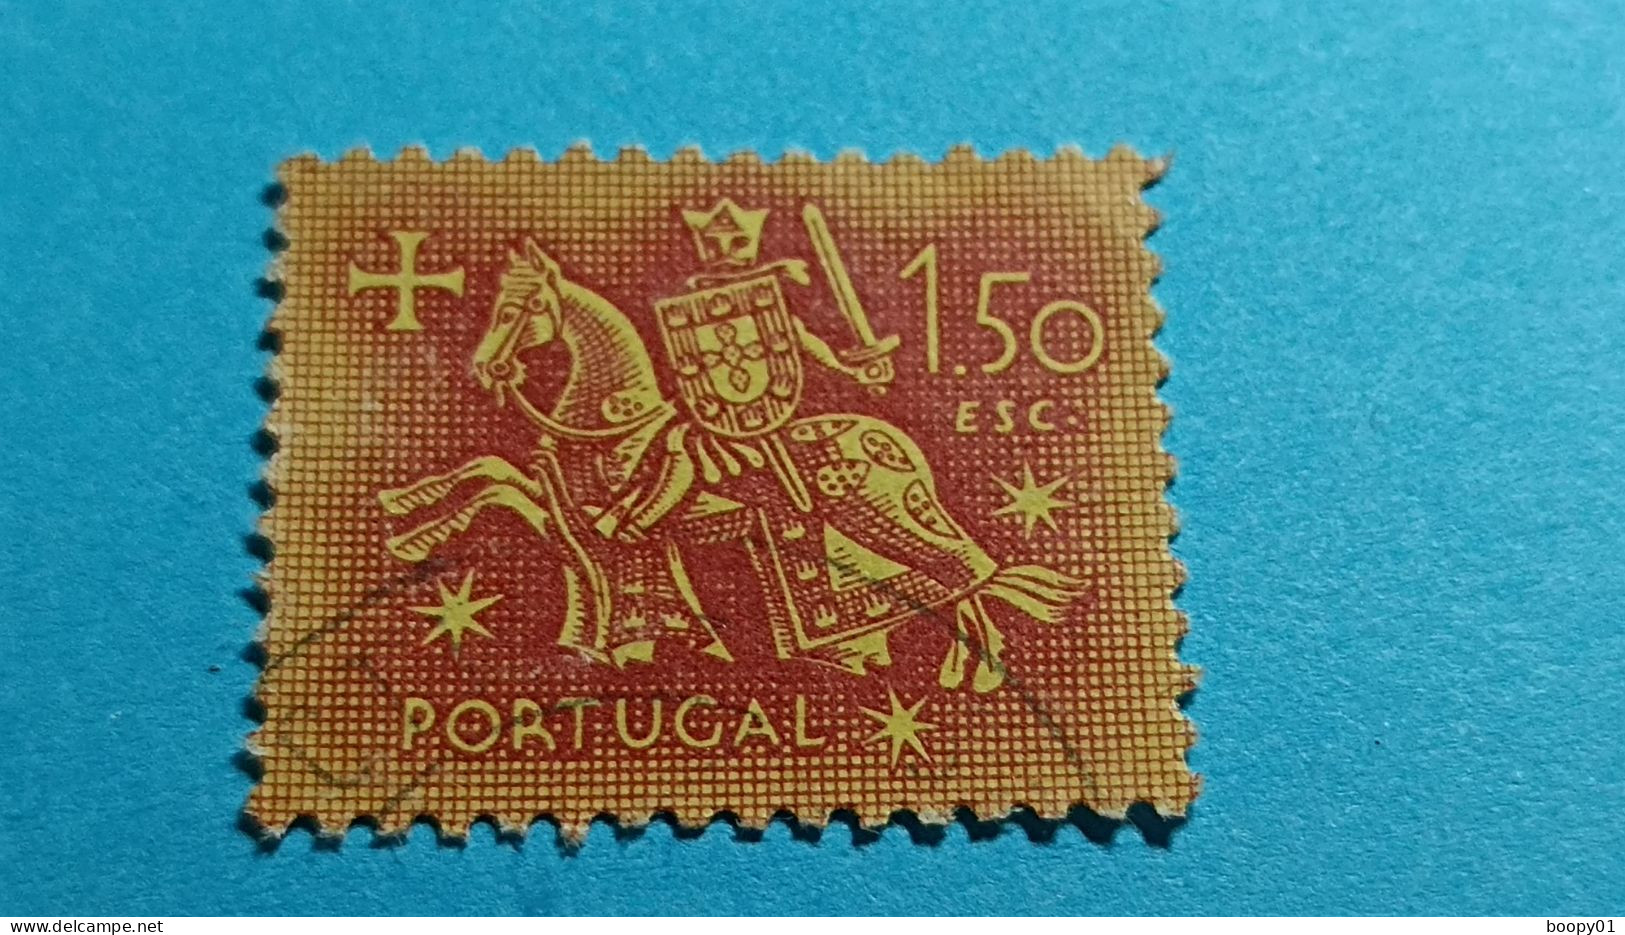 PORTUGAL - Timbre 1953 : Sceau équestre De Denis 1er De Portugal (Dinis Ou Diniz) - 1.50 Escudo - Used Stamps